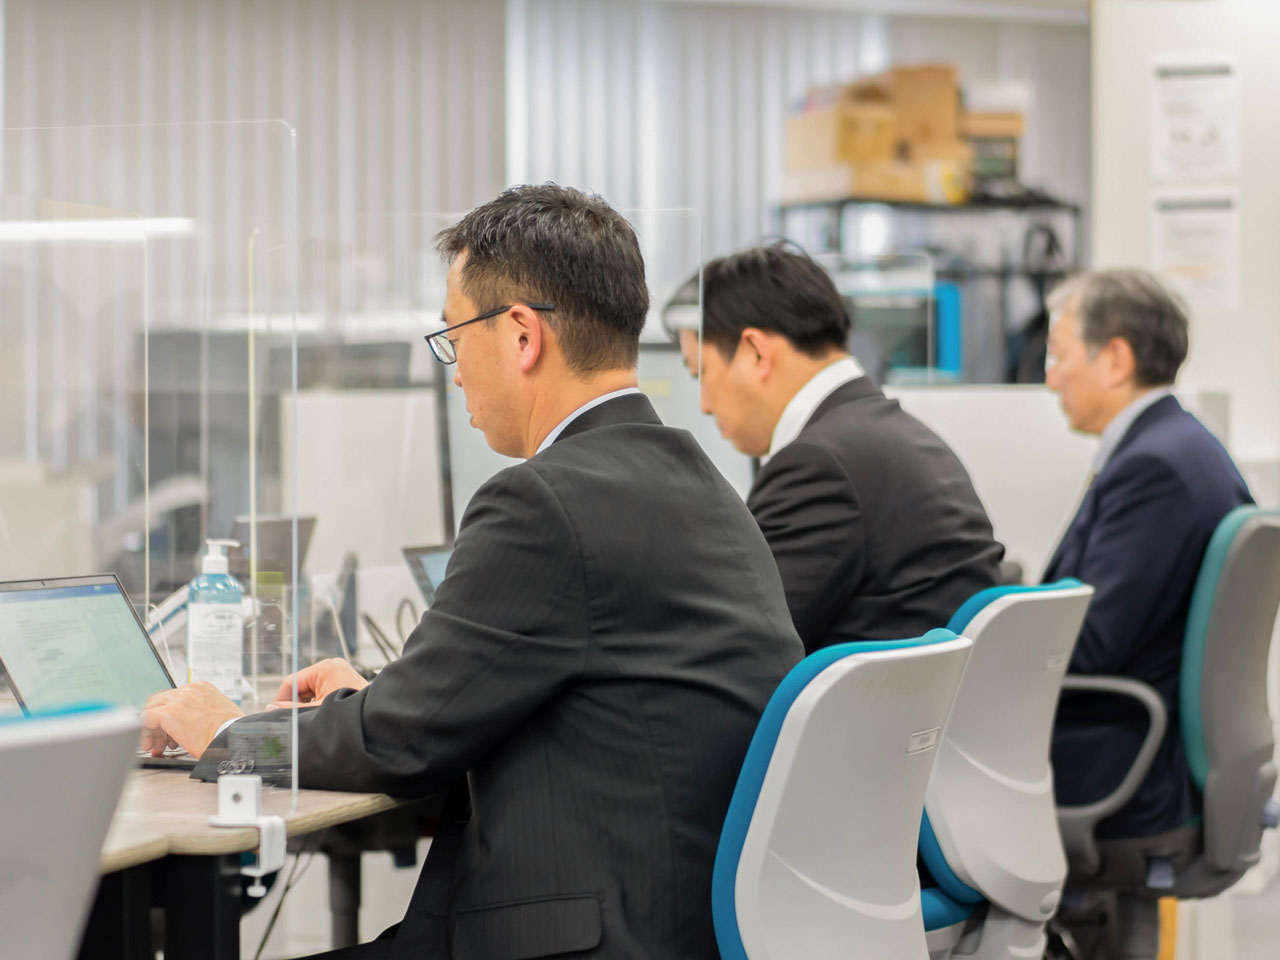 同社の事業は、ICTサービスを実現するシステム開発を中心にしながらも、現在はデジタルサイネージの制作・拡販事業にも進出し、東京都内の大規模なプロジェクトにも参画する等、ビジネスとして飛躍的な発展を続けている。